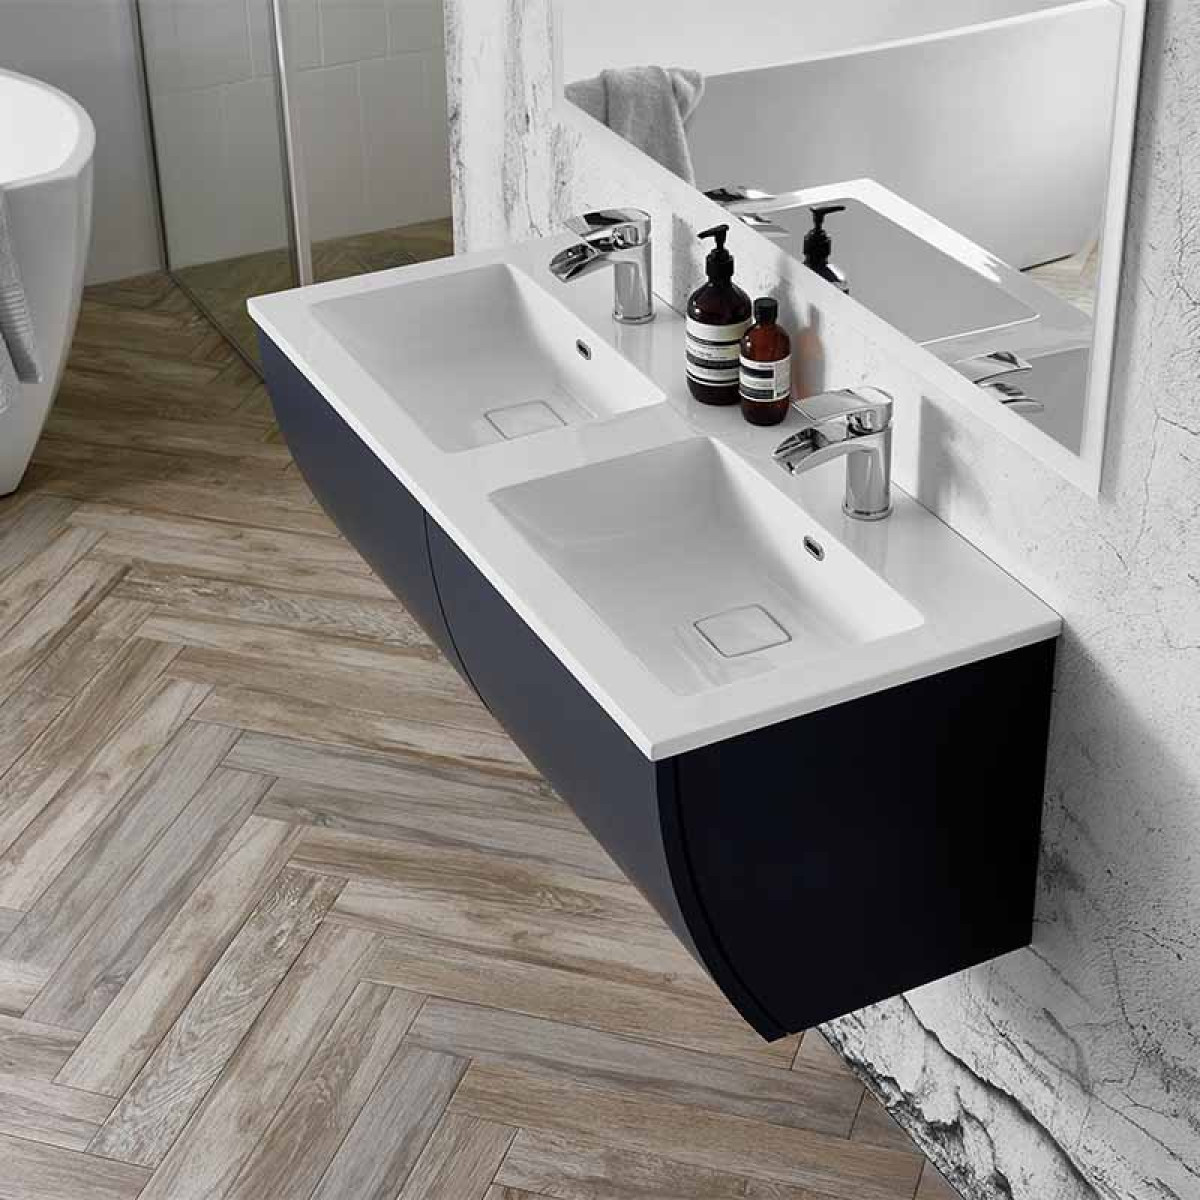 Elation Kiyo 1100mm Wall Hung Indigo, Double Sink Bathroom Vanity Units Uk